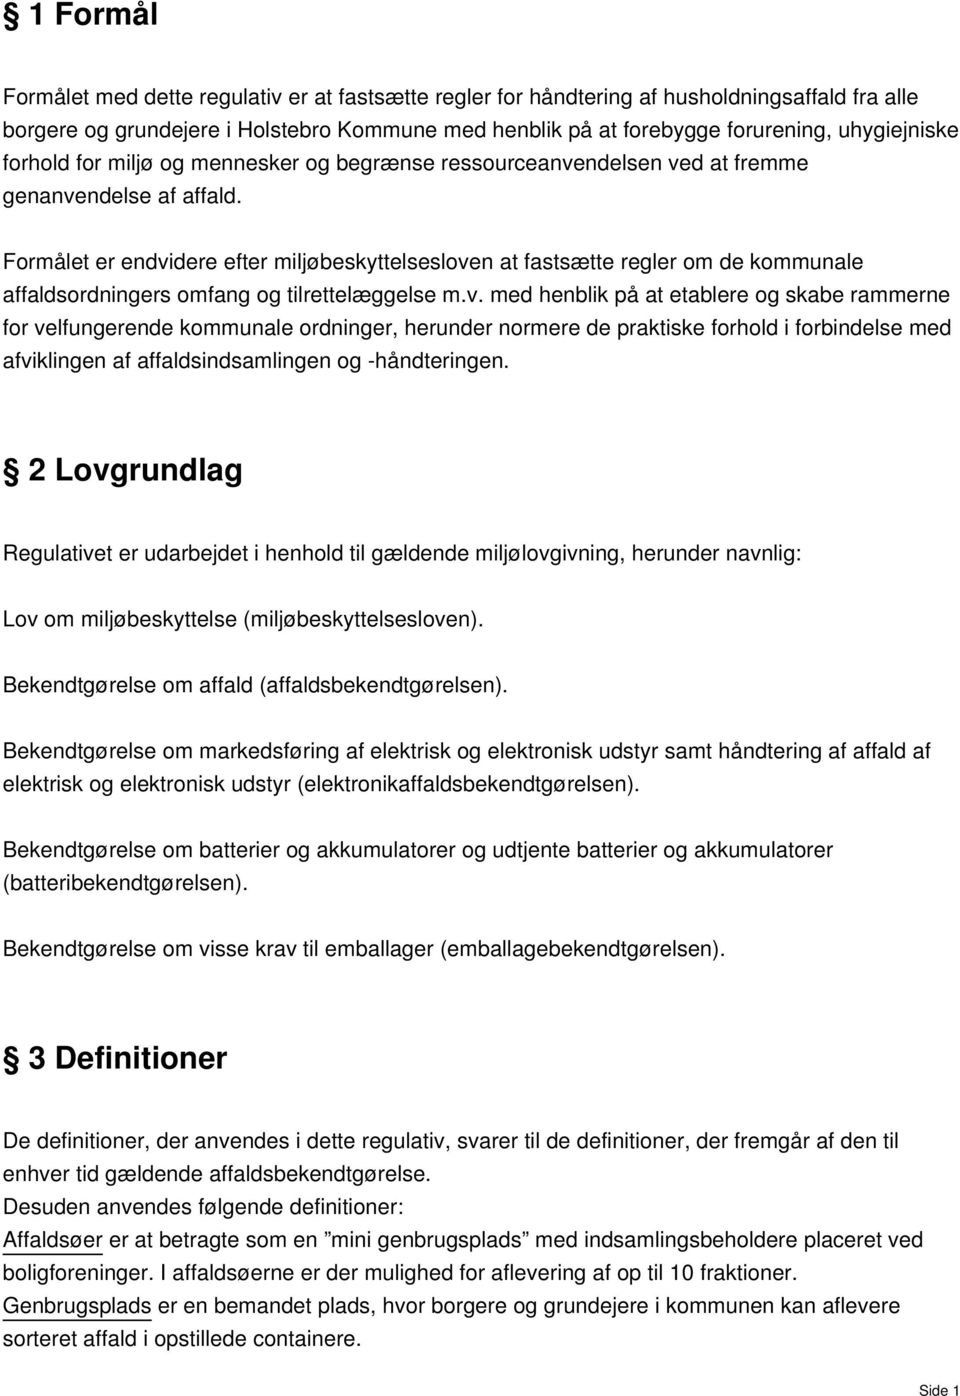 Holstebro Kommune REGULATIV FOR HUSHOLDNINGSAFFALD - PDF Free Download